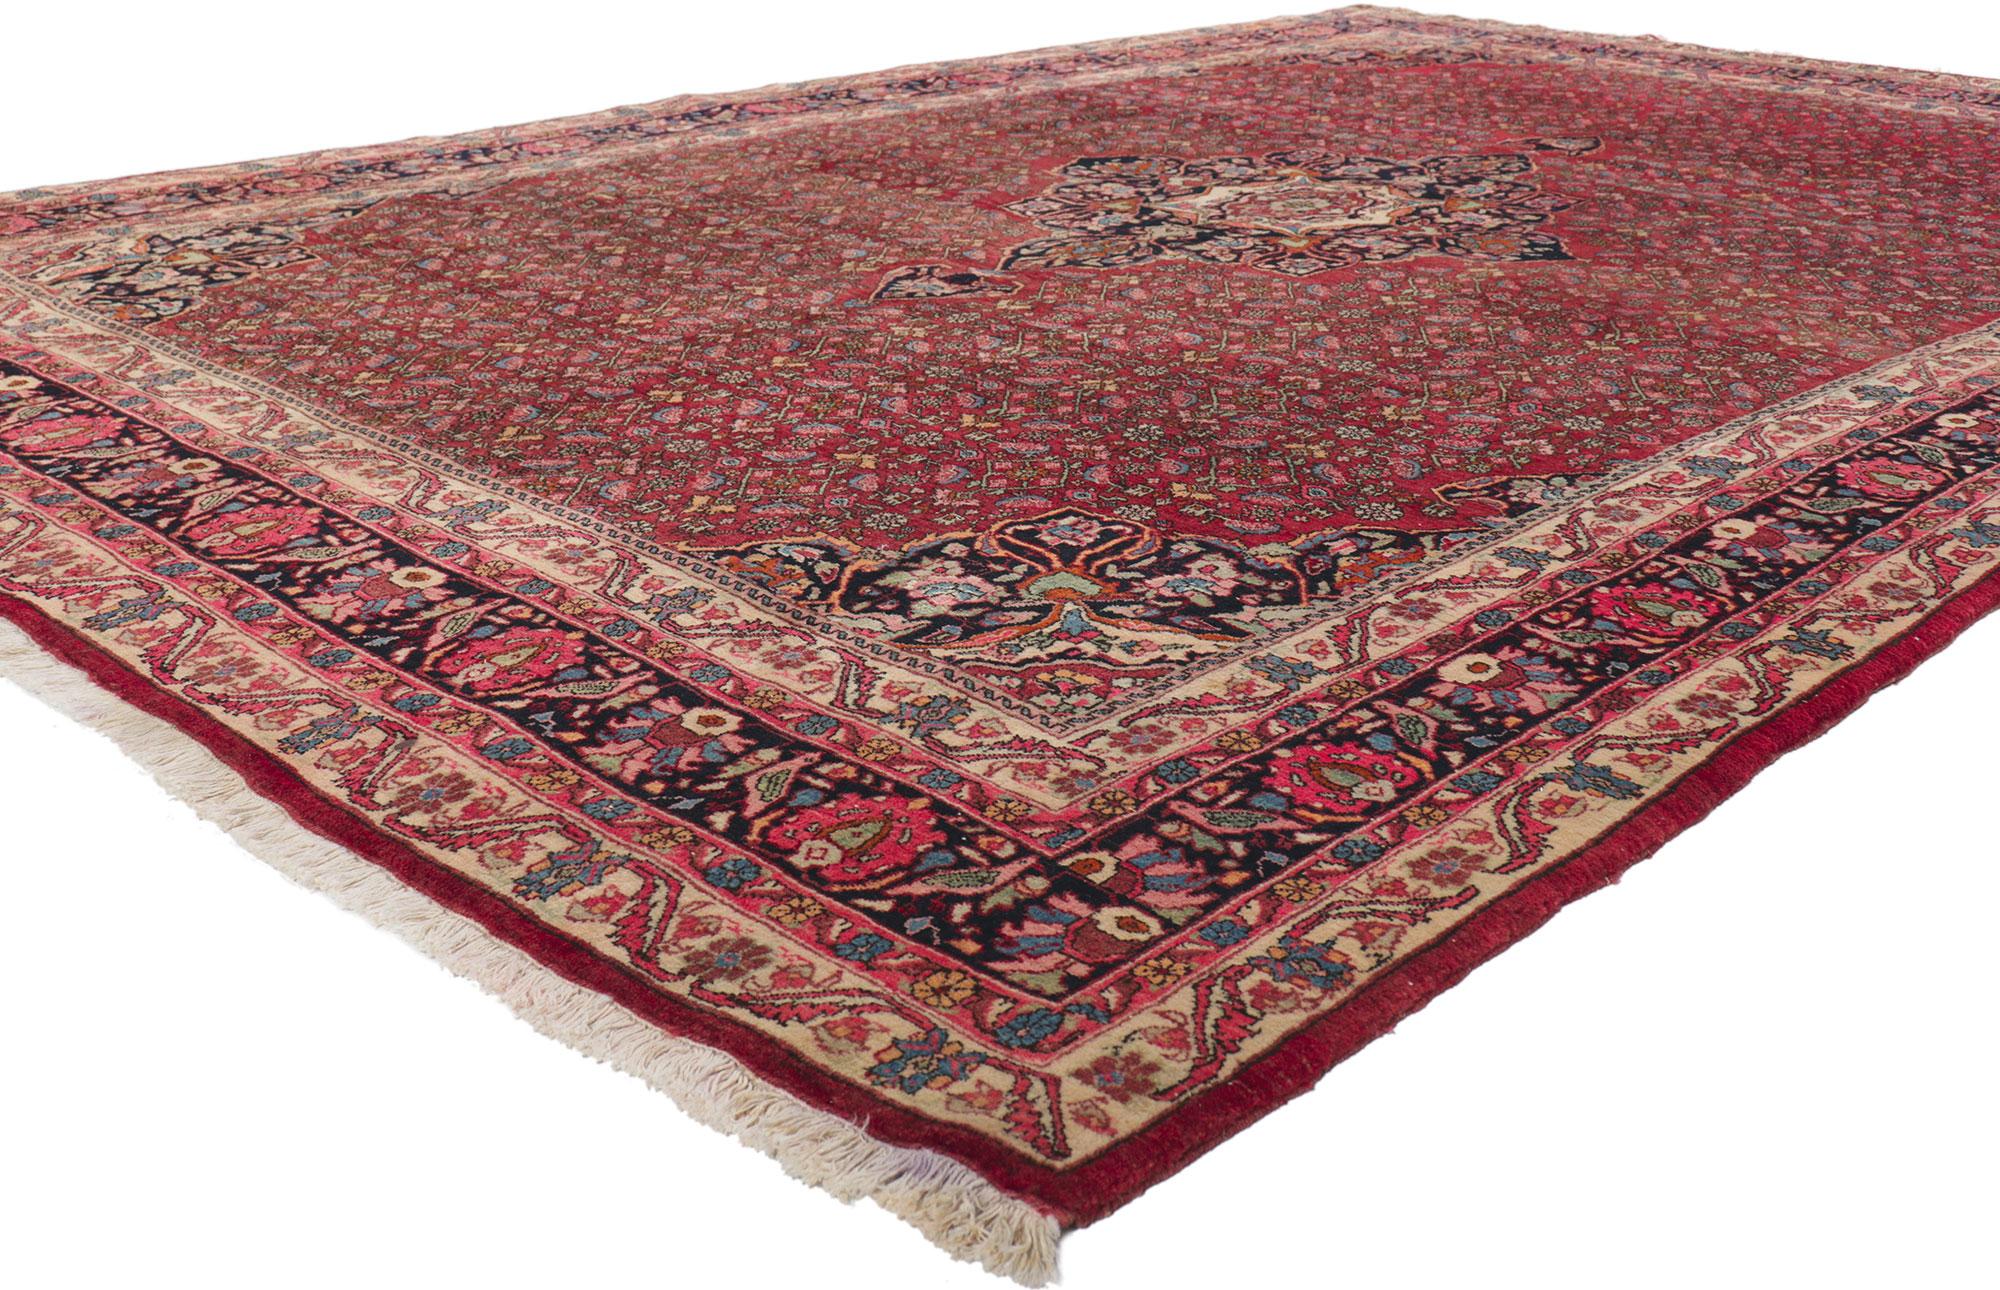 61184 Antiker persischer Bijar-Teppich, 07'05 x 11'00.
Dieser handgeknüpfte antike persische Bijar-Teppich aus Wolle besticht durch seinen zeitlosen Stil, seine unglaublichen Details und seine Struktur. Das auffällige Herati-Muster und die